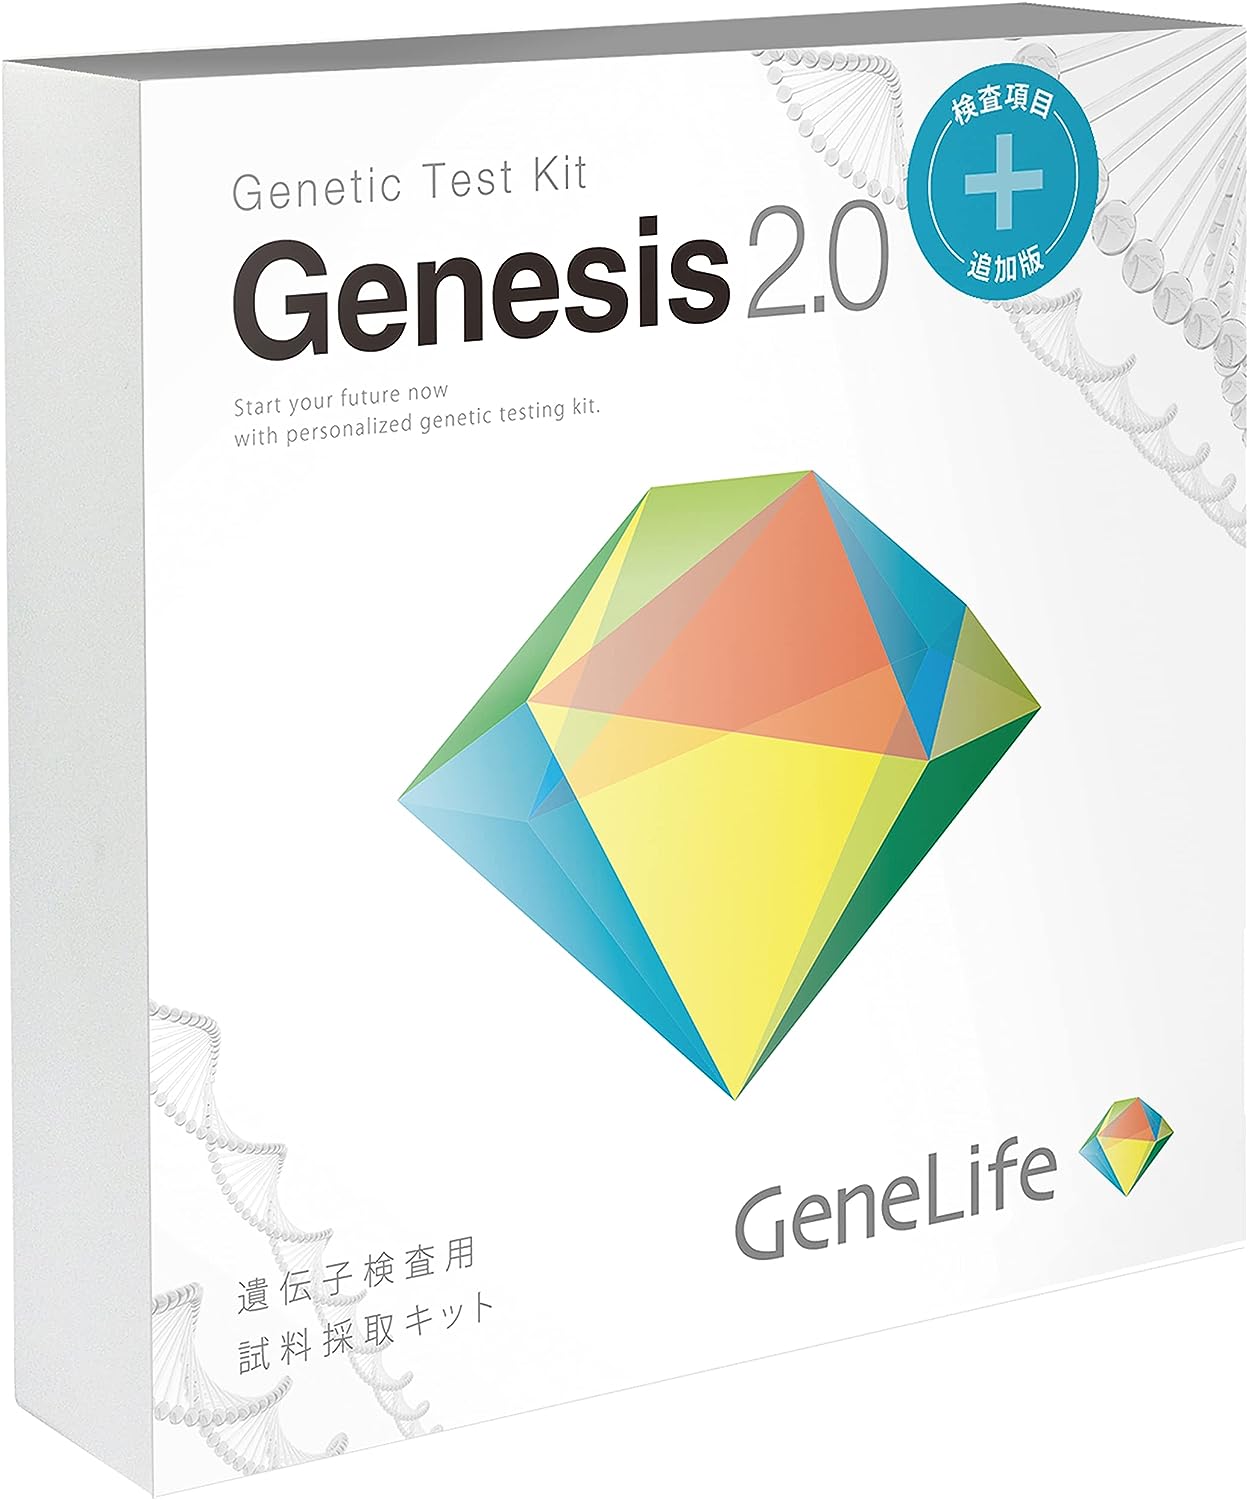 楽天14promo新 [GeneLife Genesis2.0 Plus] ジーンライフ 360項目のプレミアム遺伝子検査 / がんなどの疾患リスクや肥満体質など解析 あす楽対象商品 ダイエット 健康管理 自分を知り健康的に生活しよう